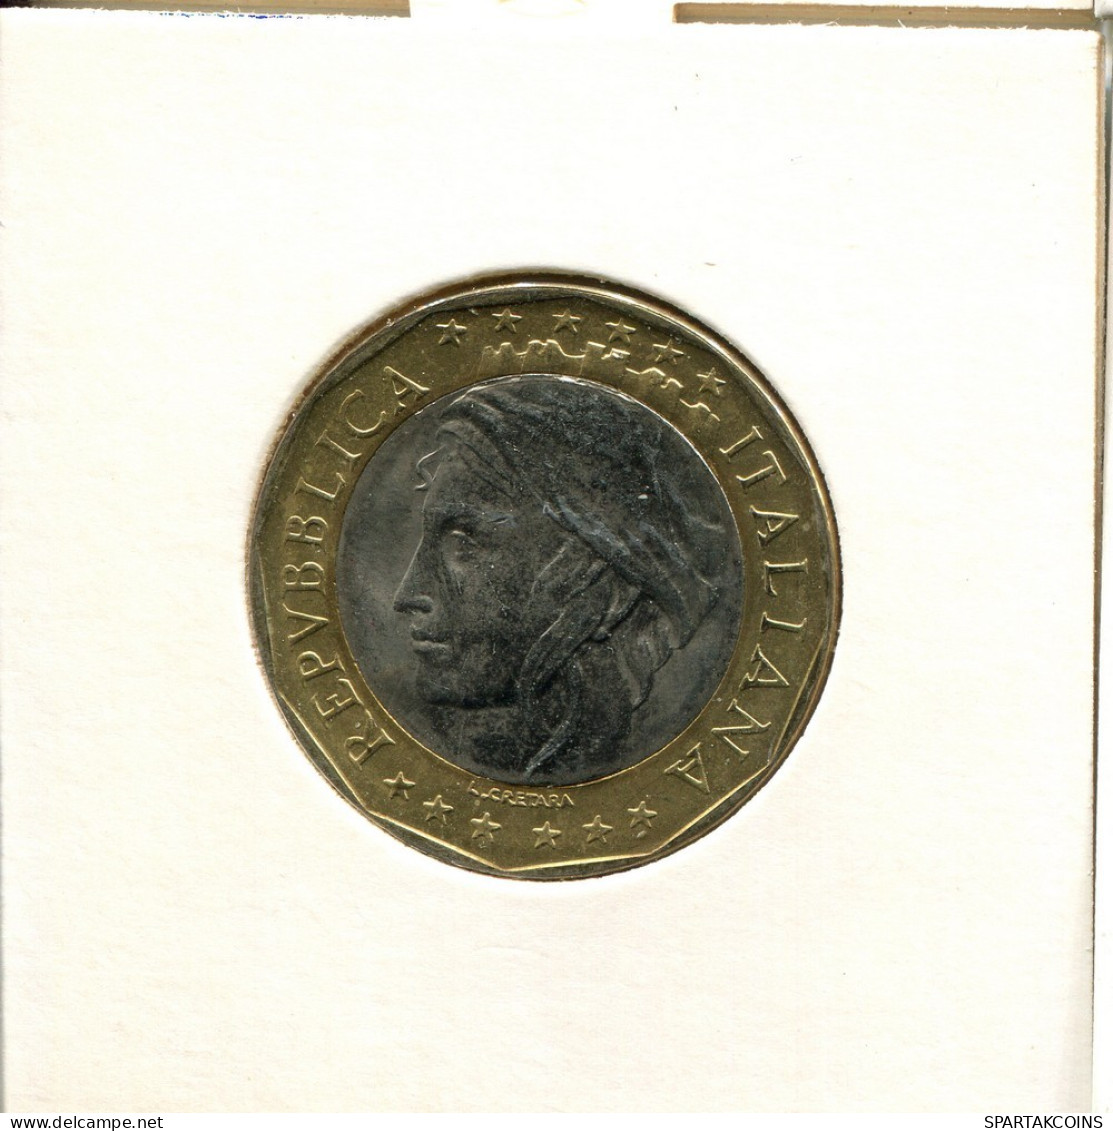 1000 LIRE 1998 ITALY Coin BIMETALLIC #AT819.U.A - 1 000 Lire